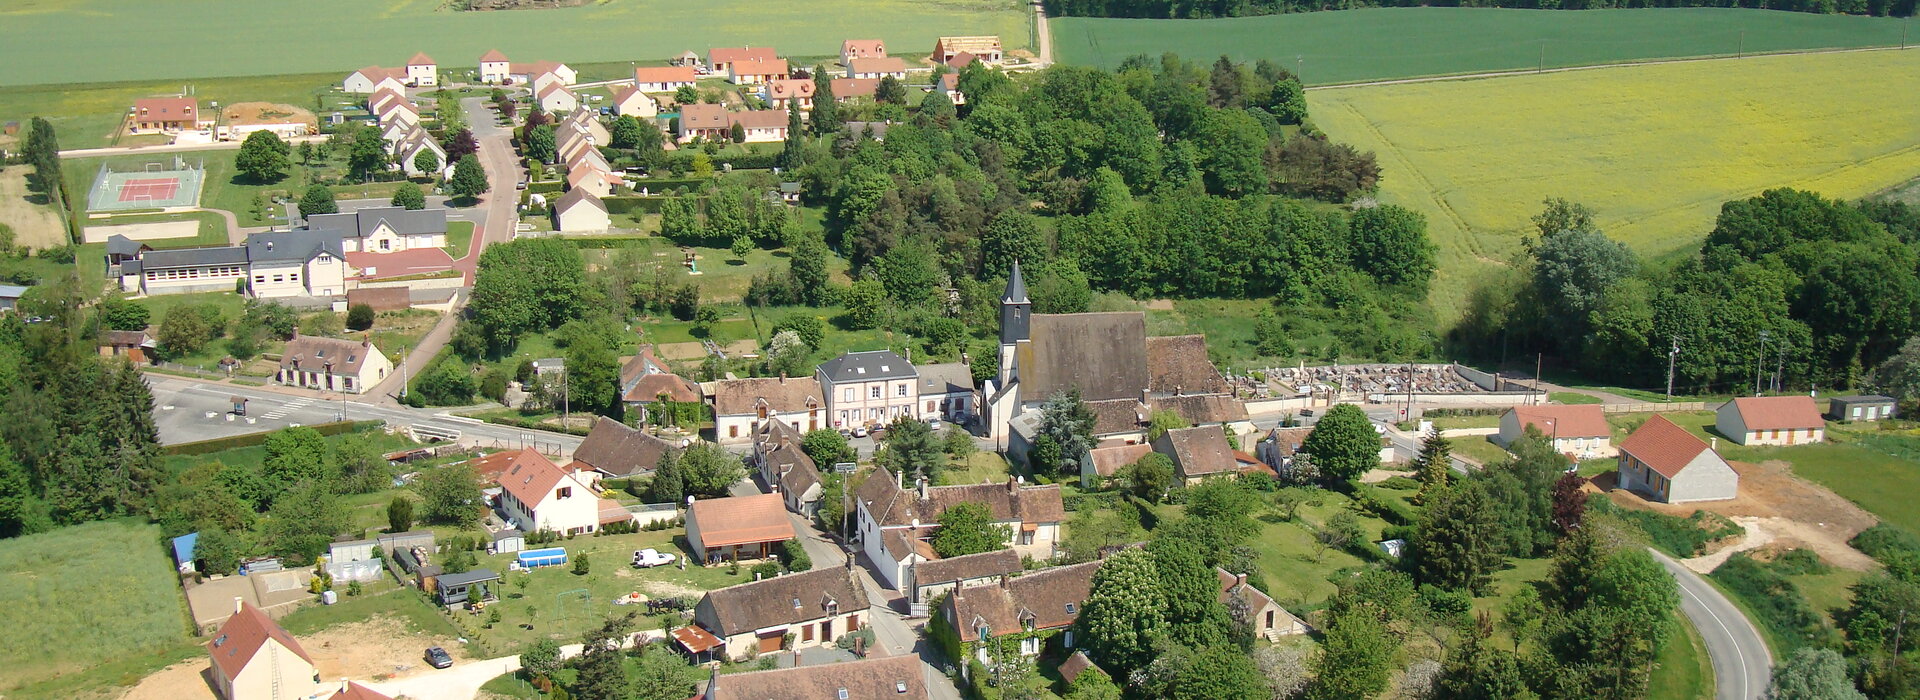 Le village de Saint-Firmin-des-Bois